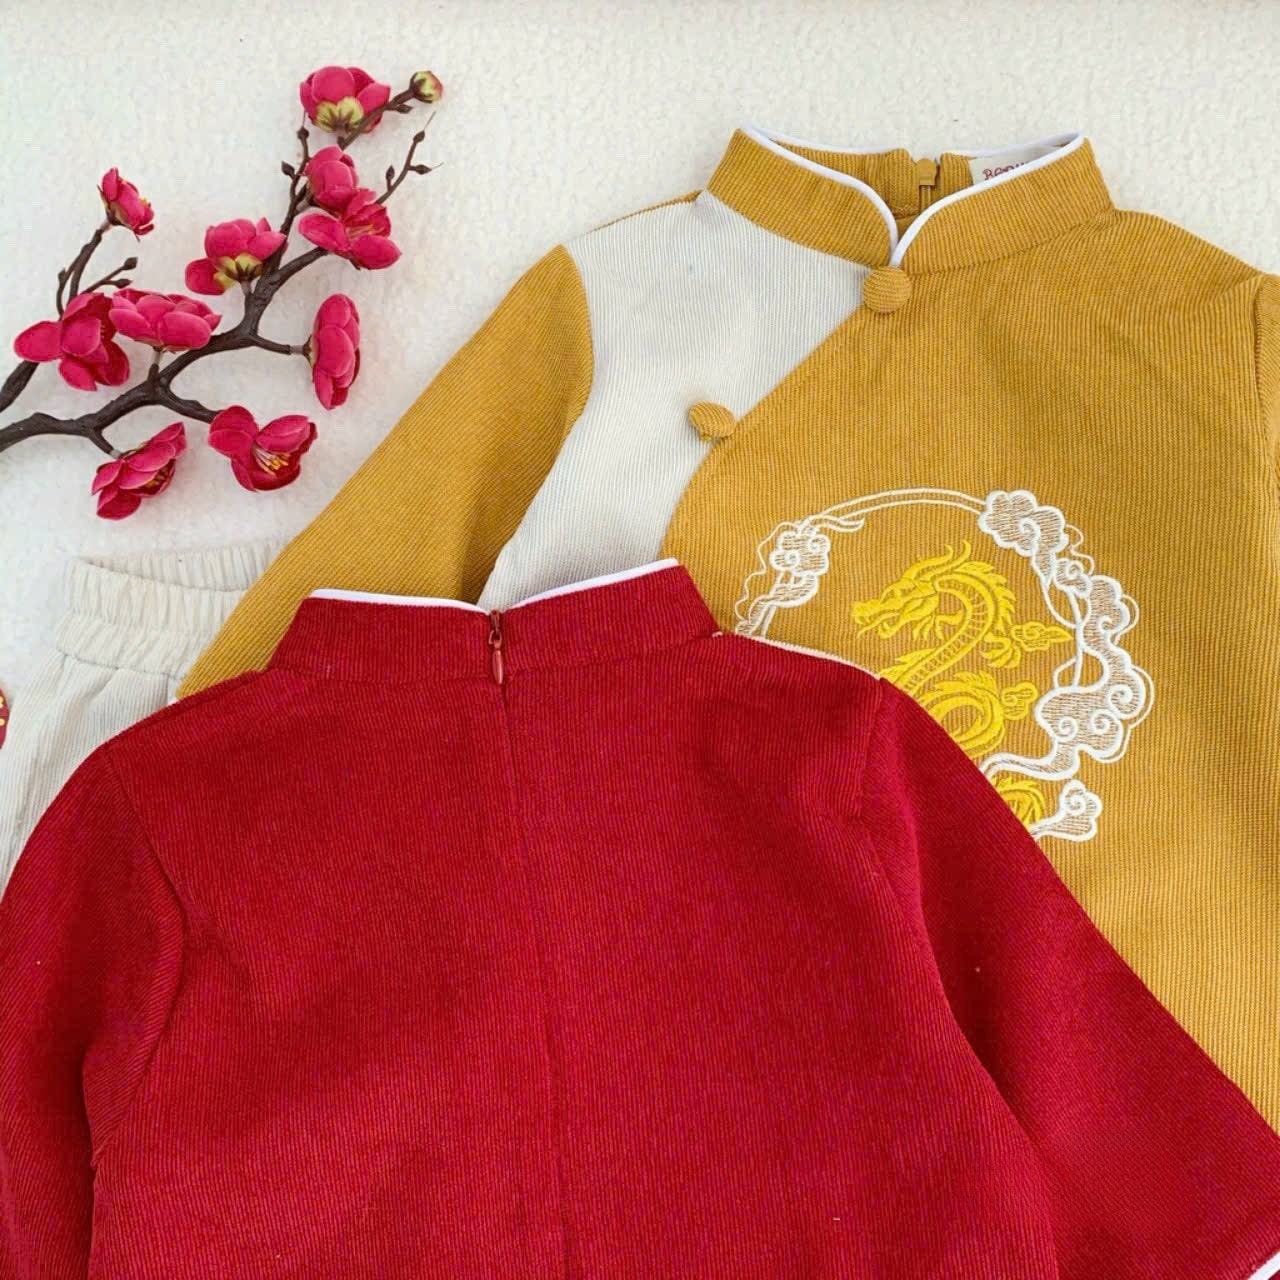 Boy Embroidery Dragon Ao Dai Top (Yellow, Blue, Red) | Pre-made Traditional Vietnamese Ao Dai | Lunar New Year | Ao Dai for Boy |